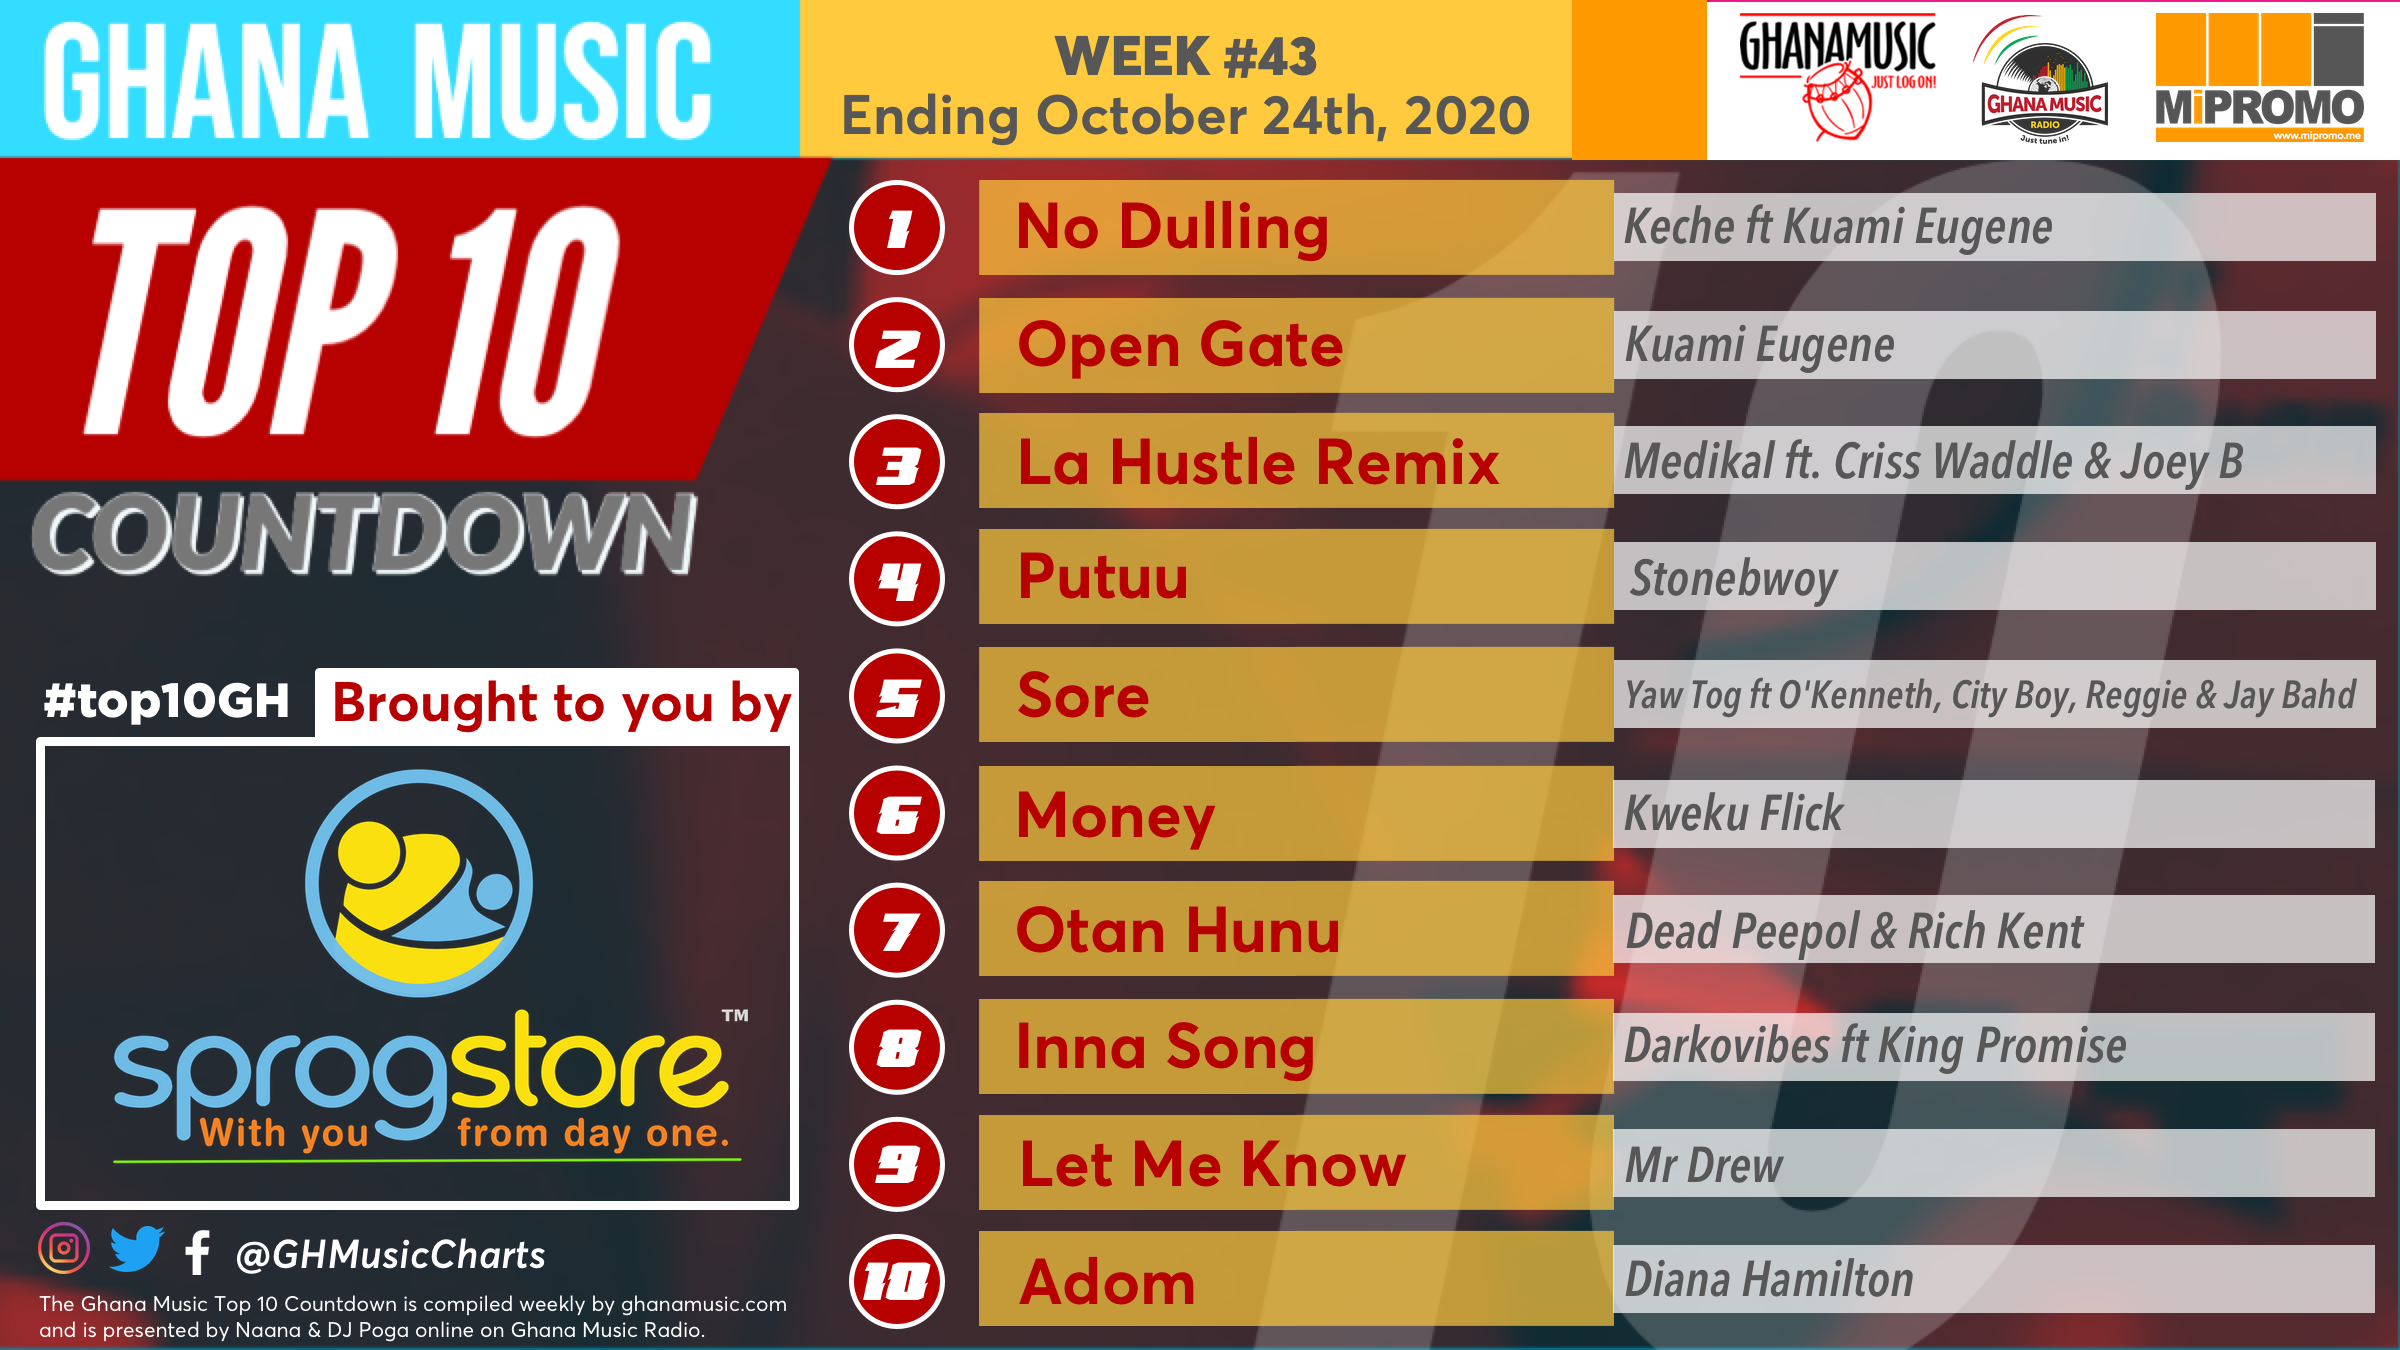 2020 Week 43: Ghana Music Top 10 Countdown